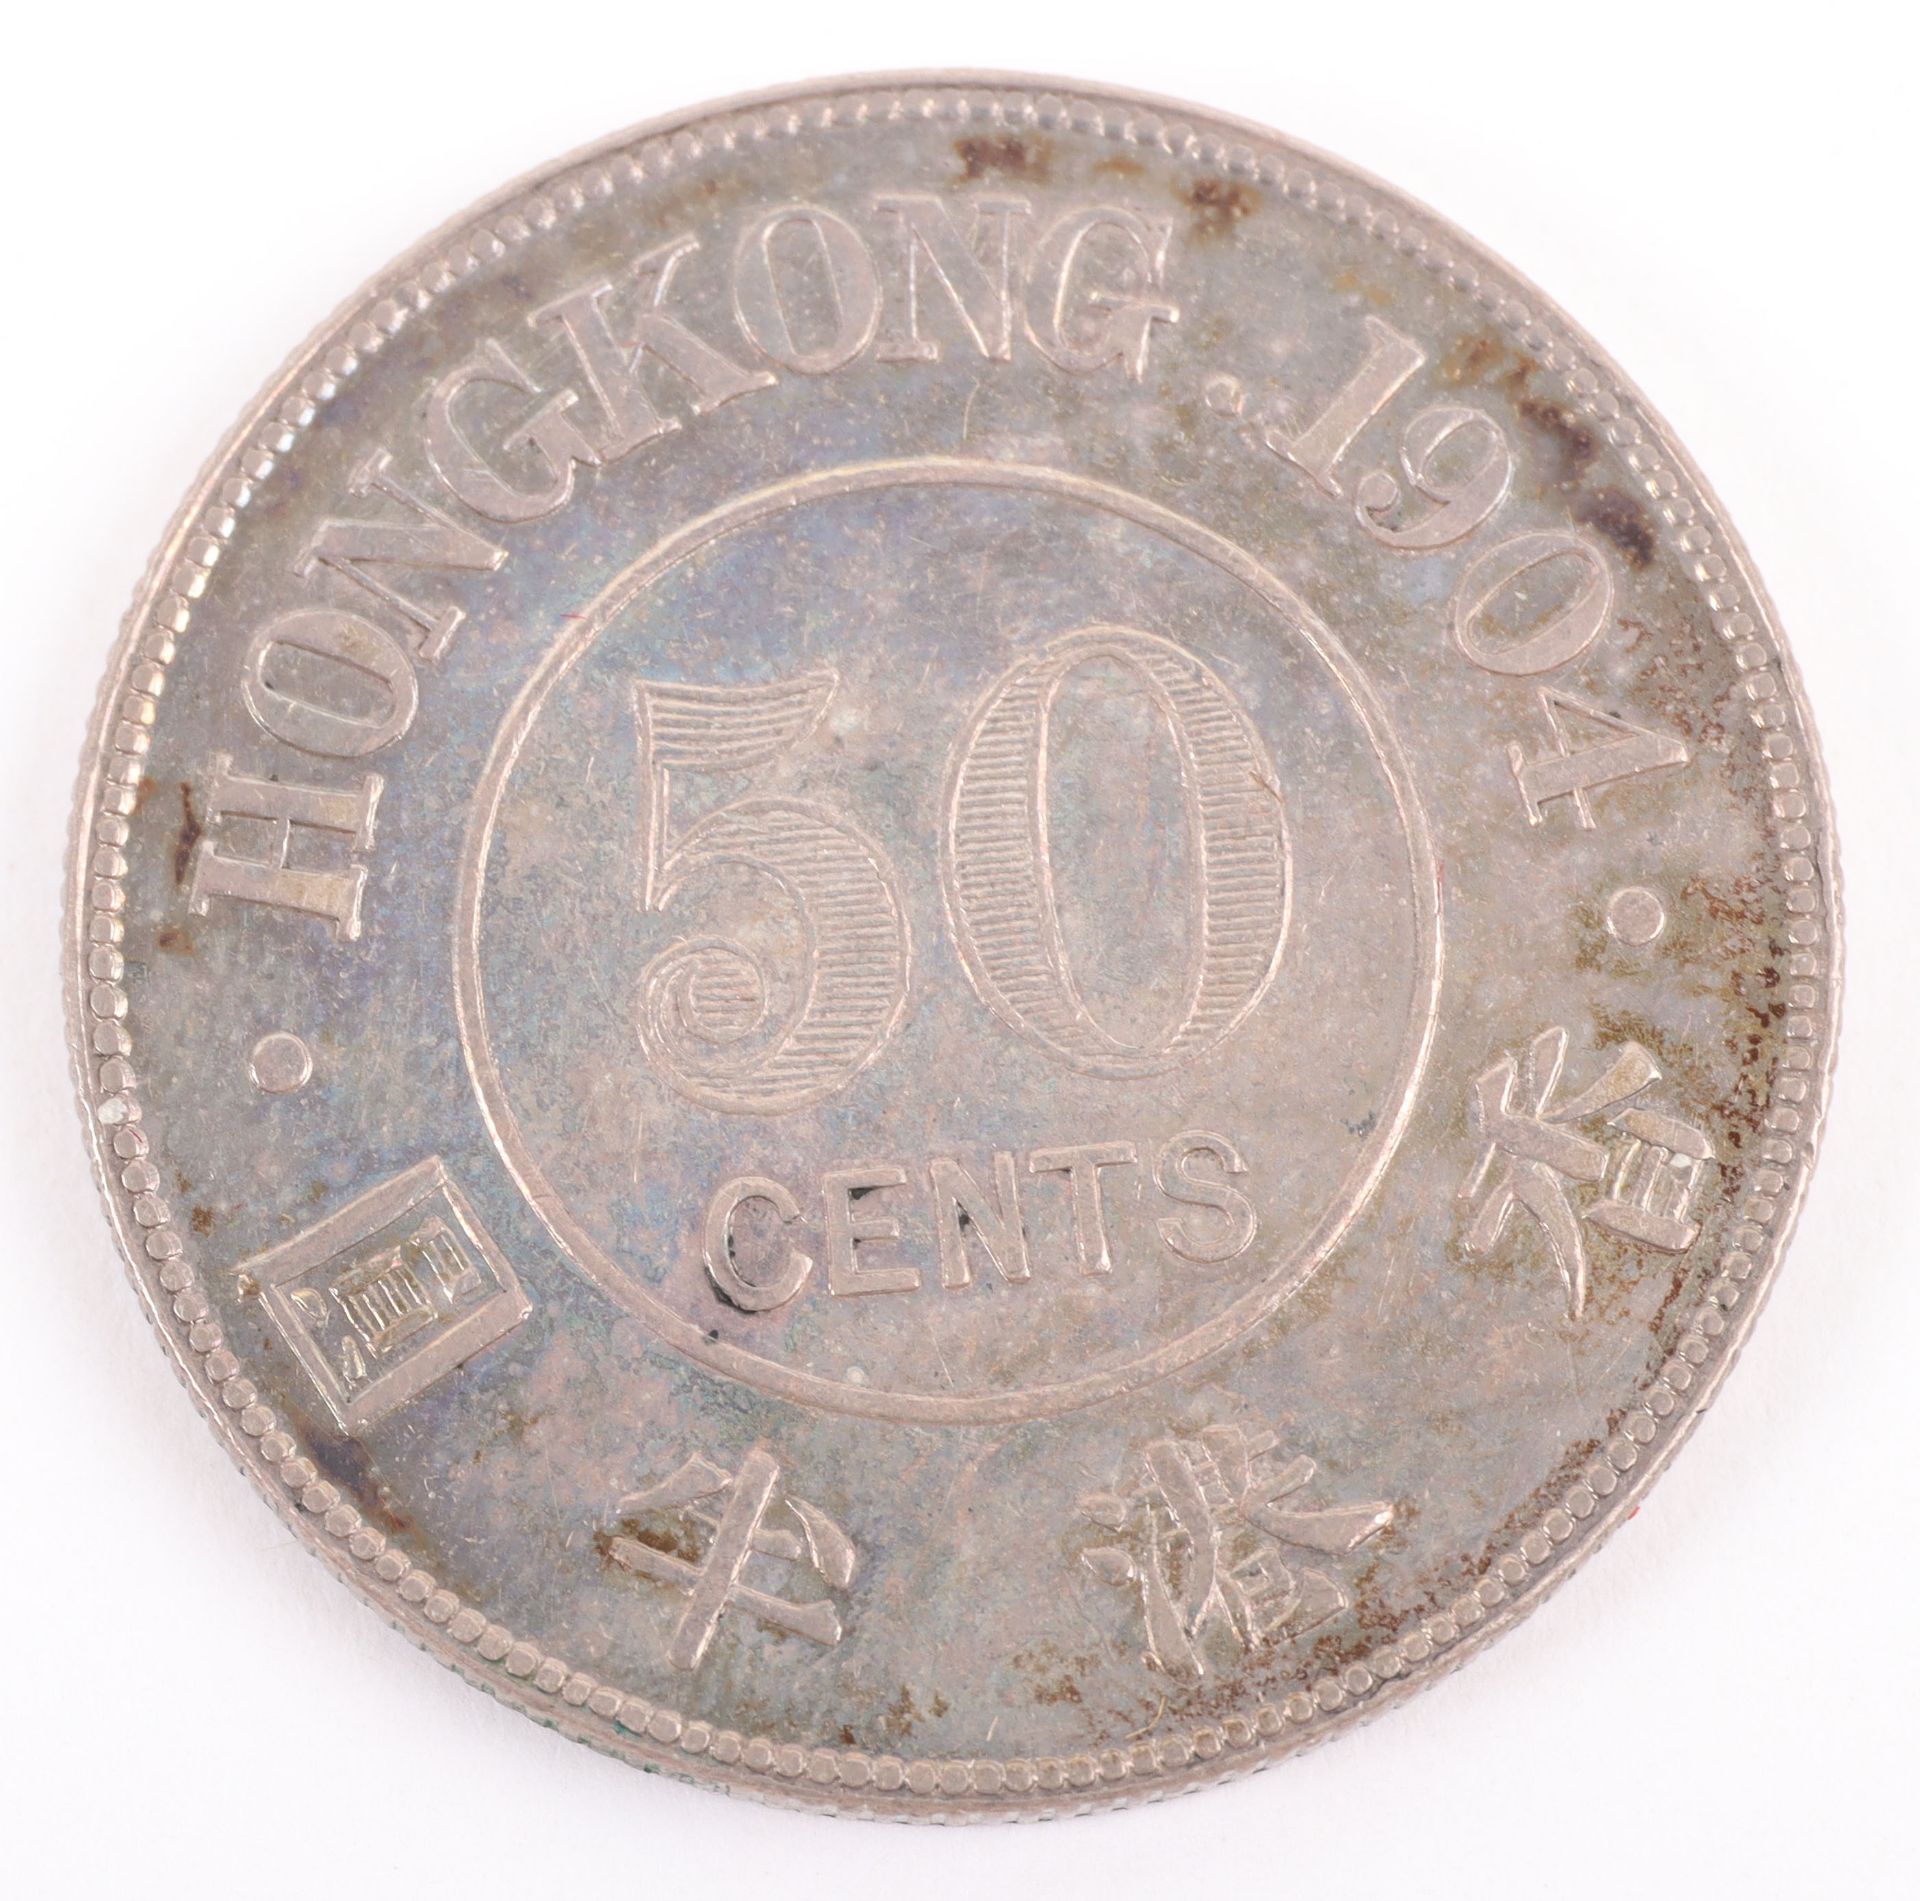 British Colonies, Edward VII (1901-1910), Hong Kong, 50 Cents, 1904 - Image 2 of 2